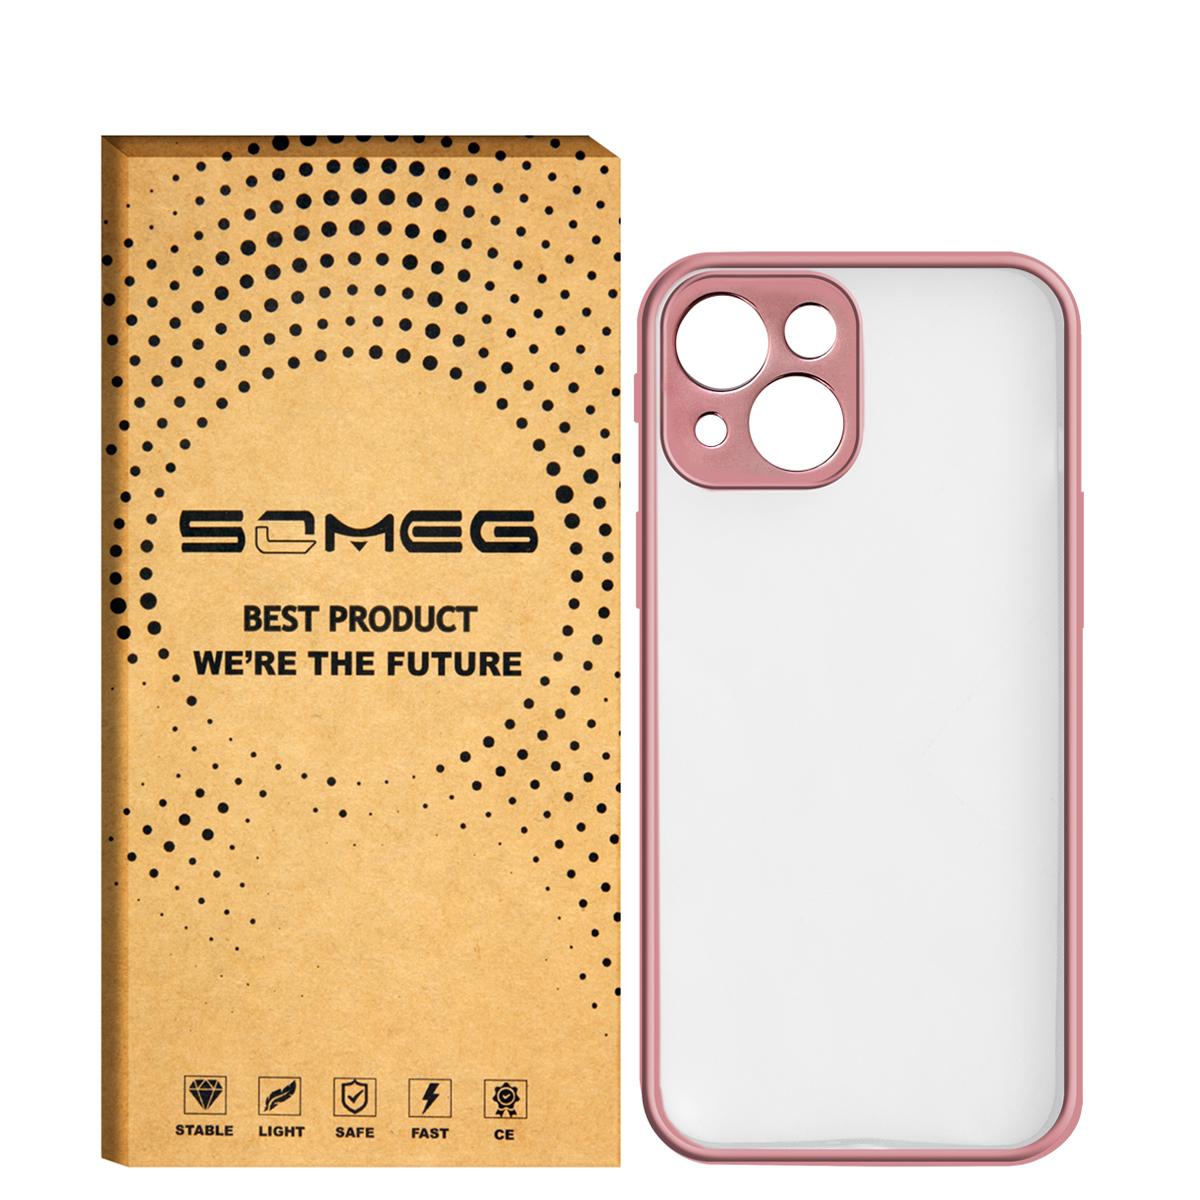  کاور سومگ مدل SMG-Line مناسب برای گوشی موبایل اپل iPhone 13